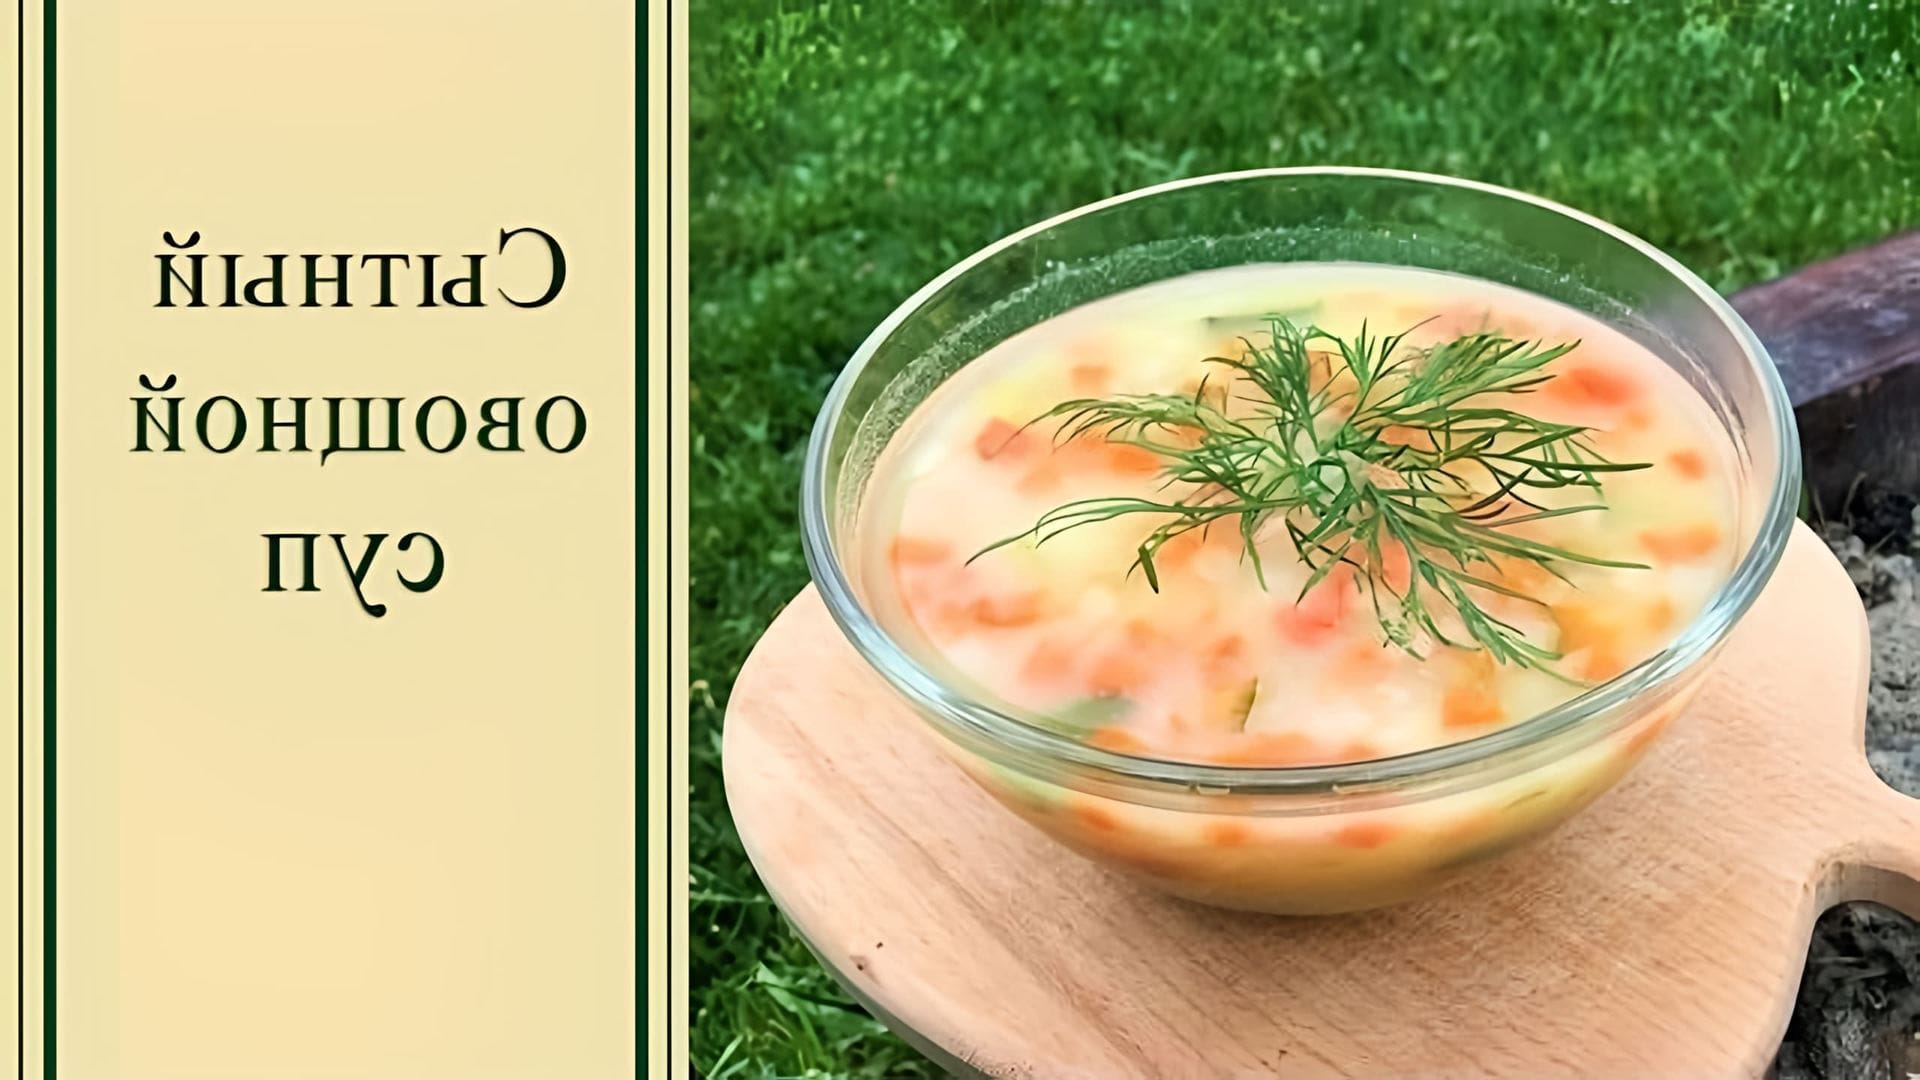 В этом видео-ролике будет представлен рецепт сытного овощного супа, который подойдет для вегетарианского питания